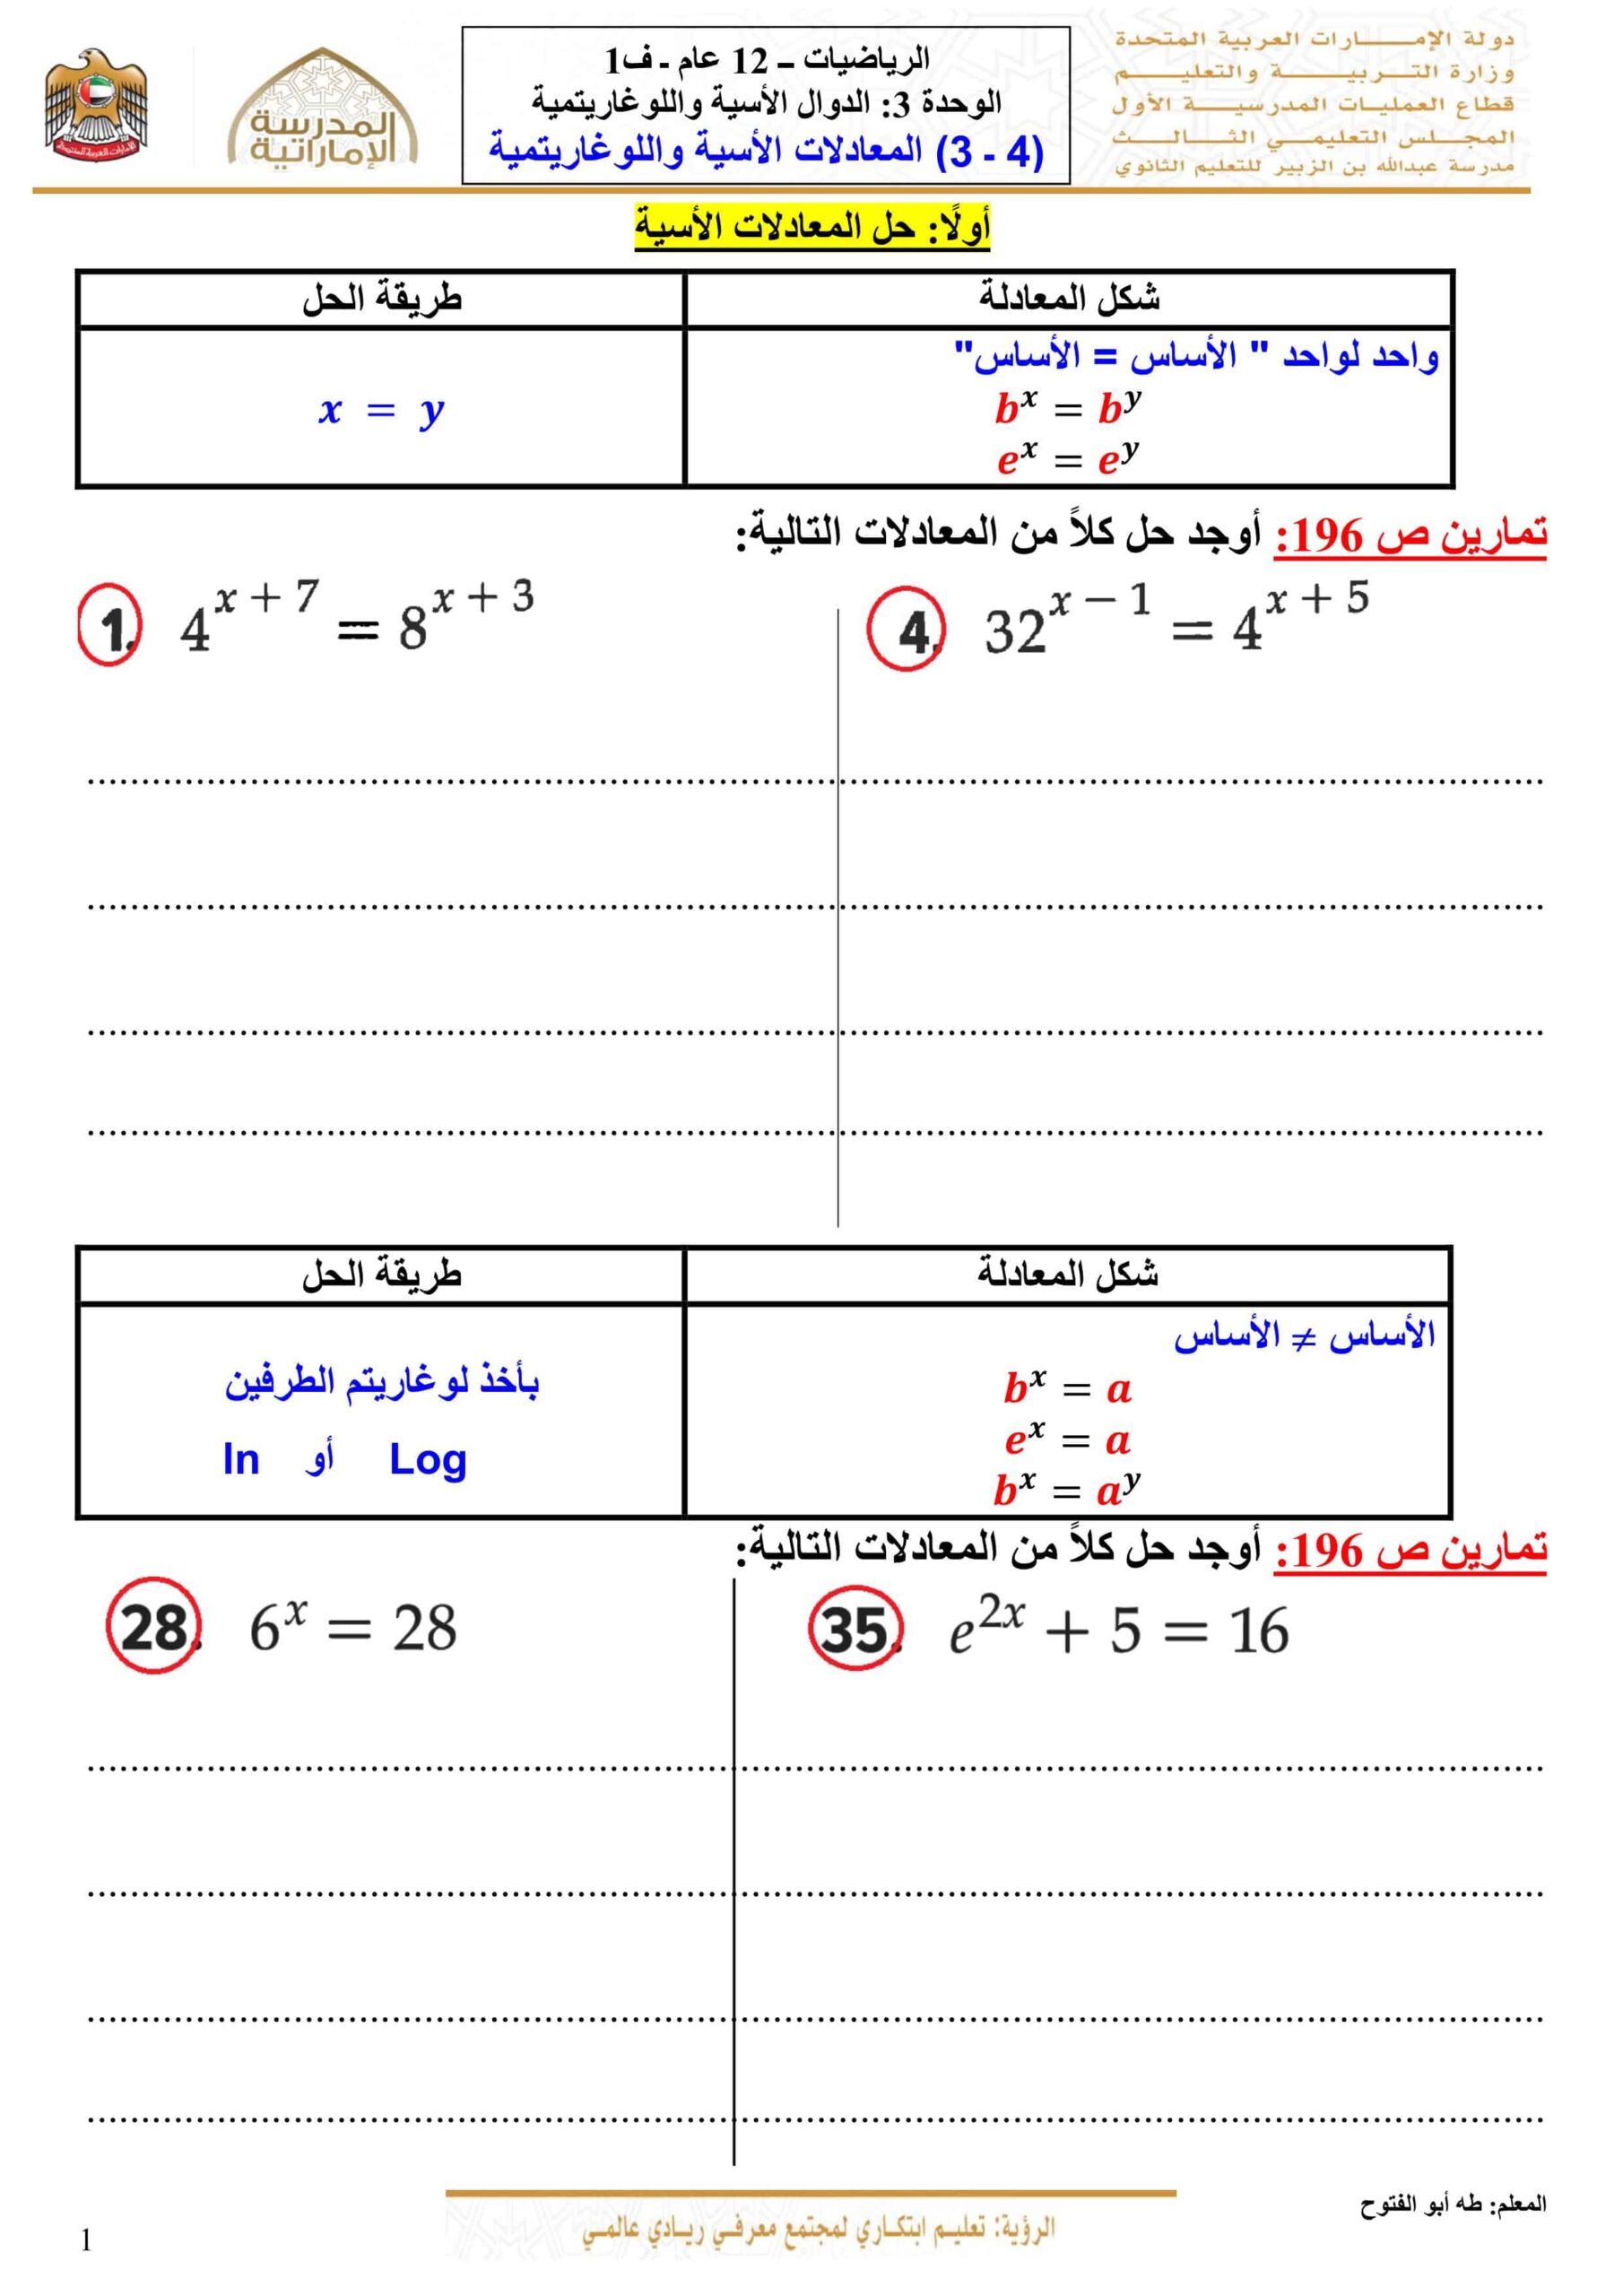 أوراق عمل المعادلات الأسية واللوغاريتمية الرياضيات المتكاملة الصف الثاني عشر عام